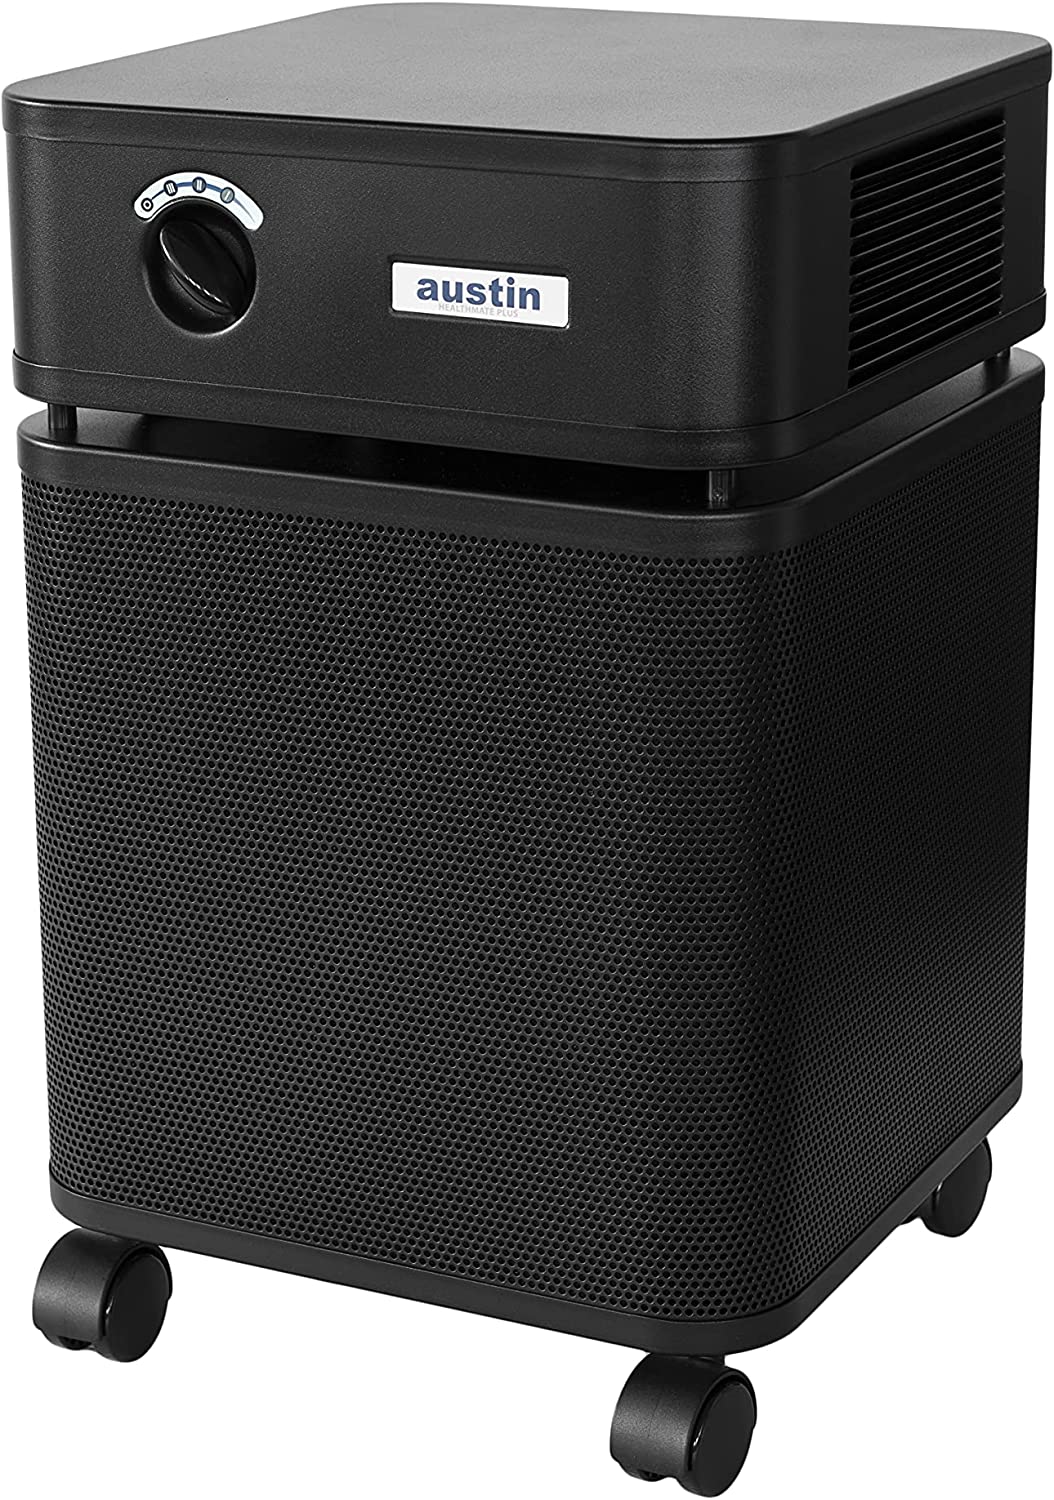 Austin Air Healthmate Plus Air Purifier Black - B450B1